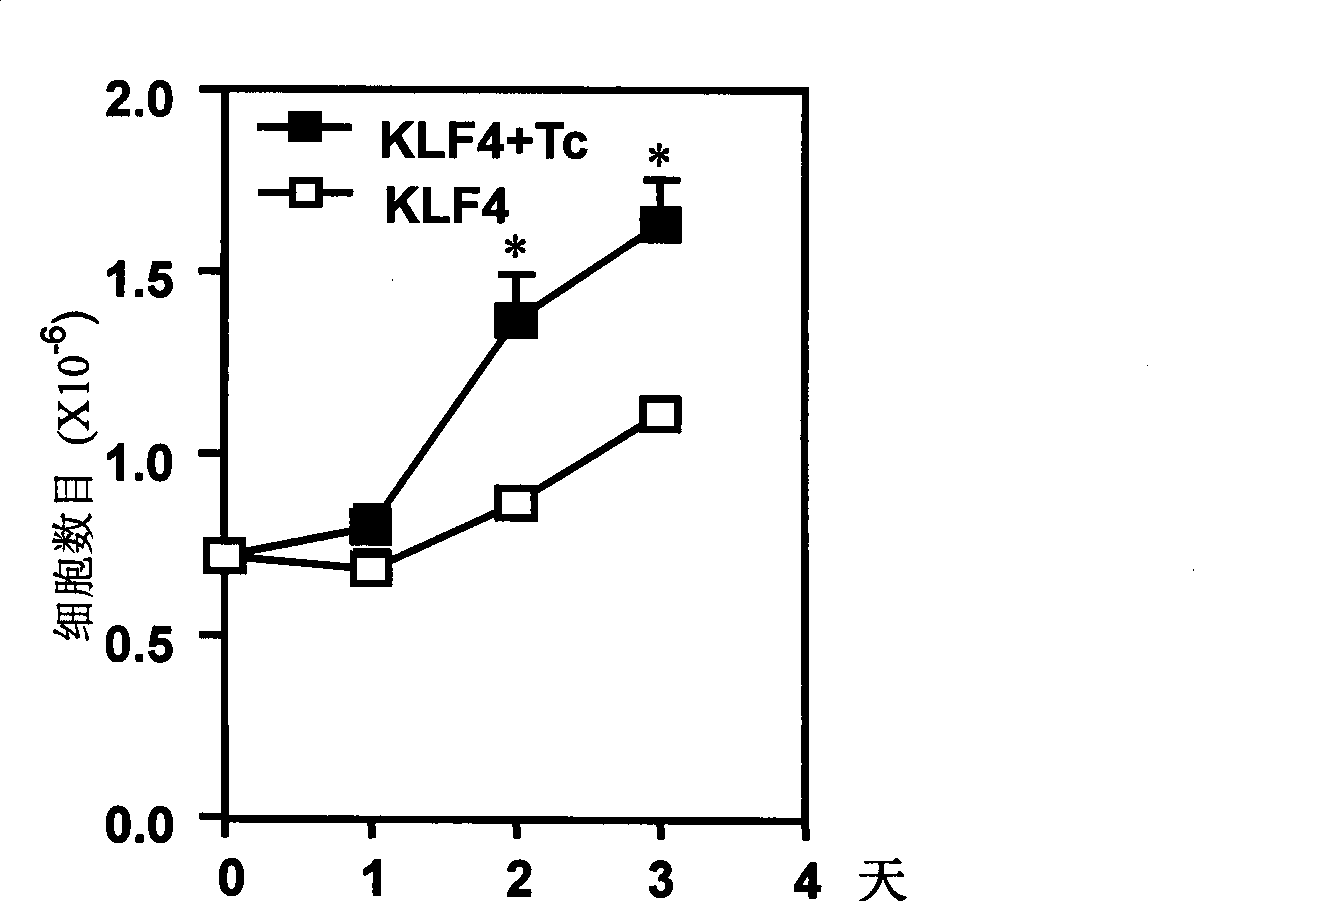 Novel use of Kruppel-like transcription factor 4